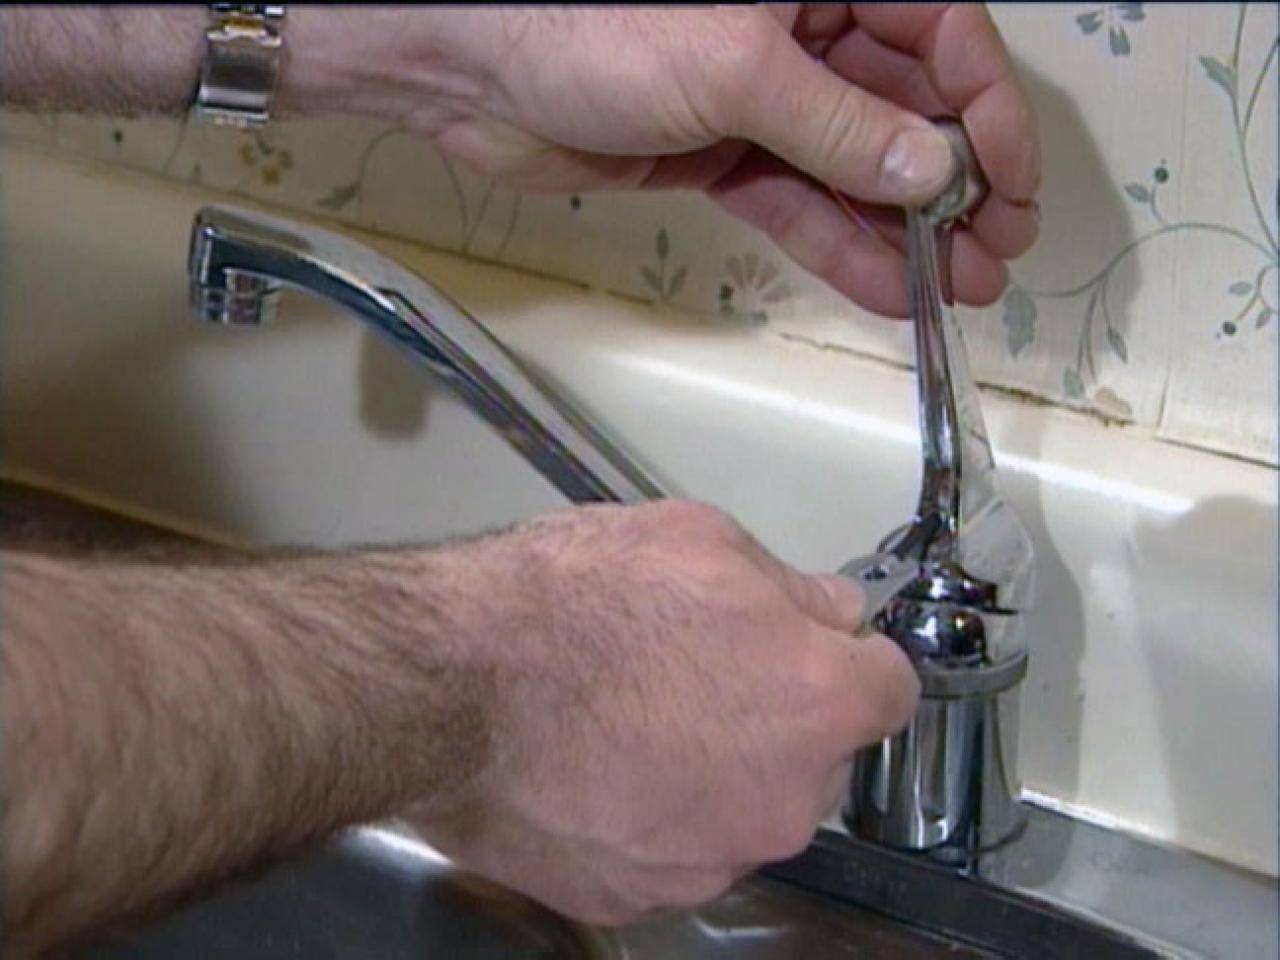 Бьет током от воды из крана, почему в ванной 220, причины утечки тока и что делать в таких случаях